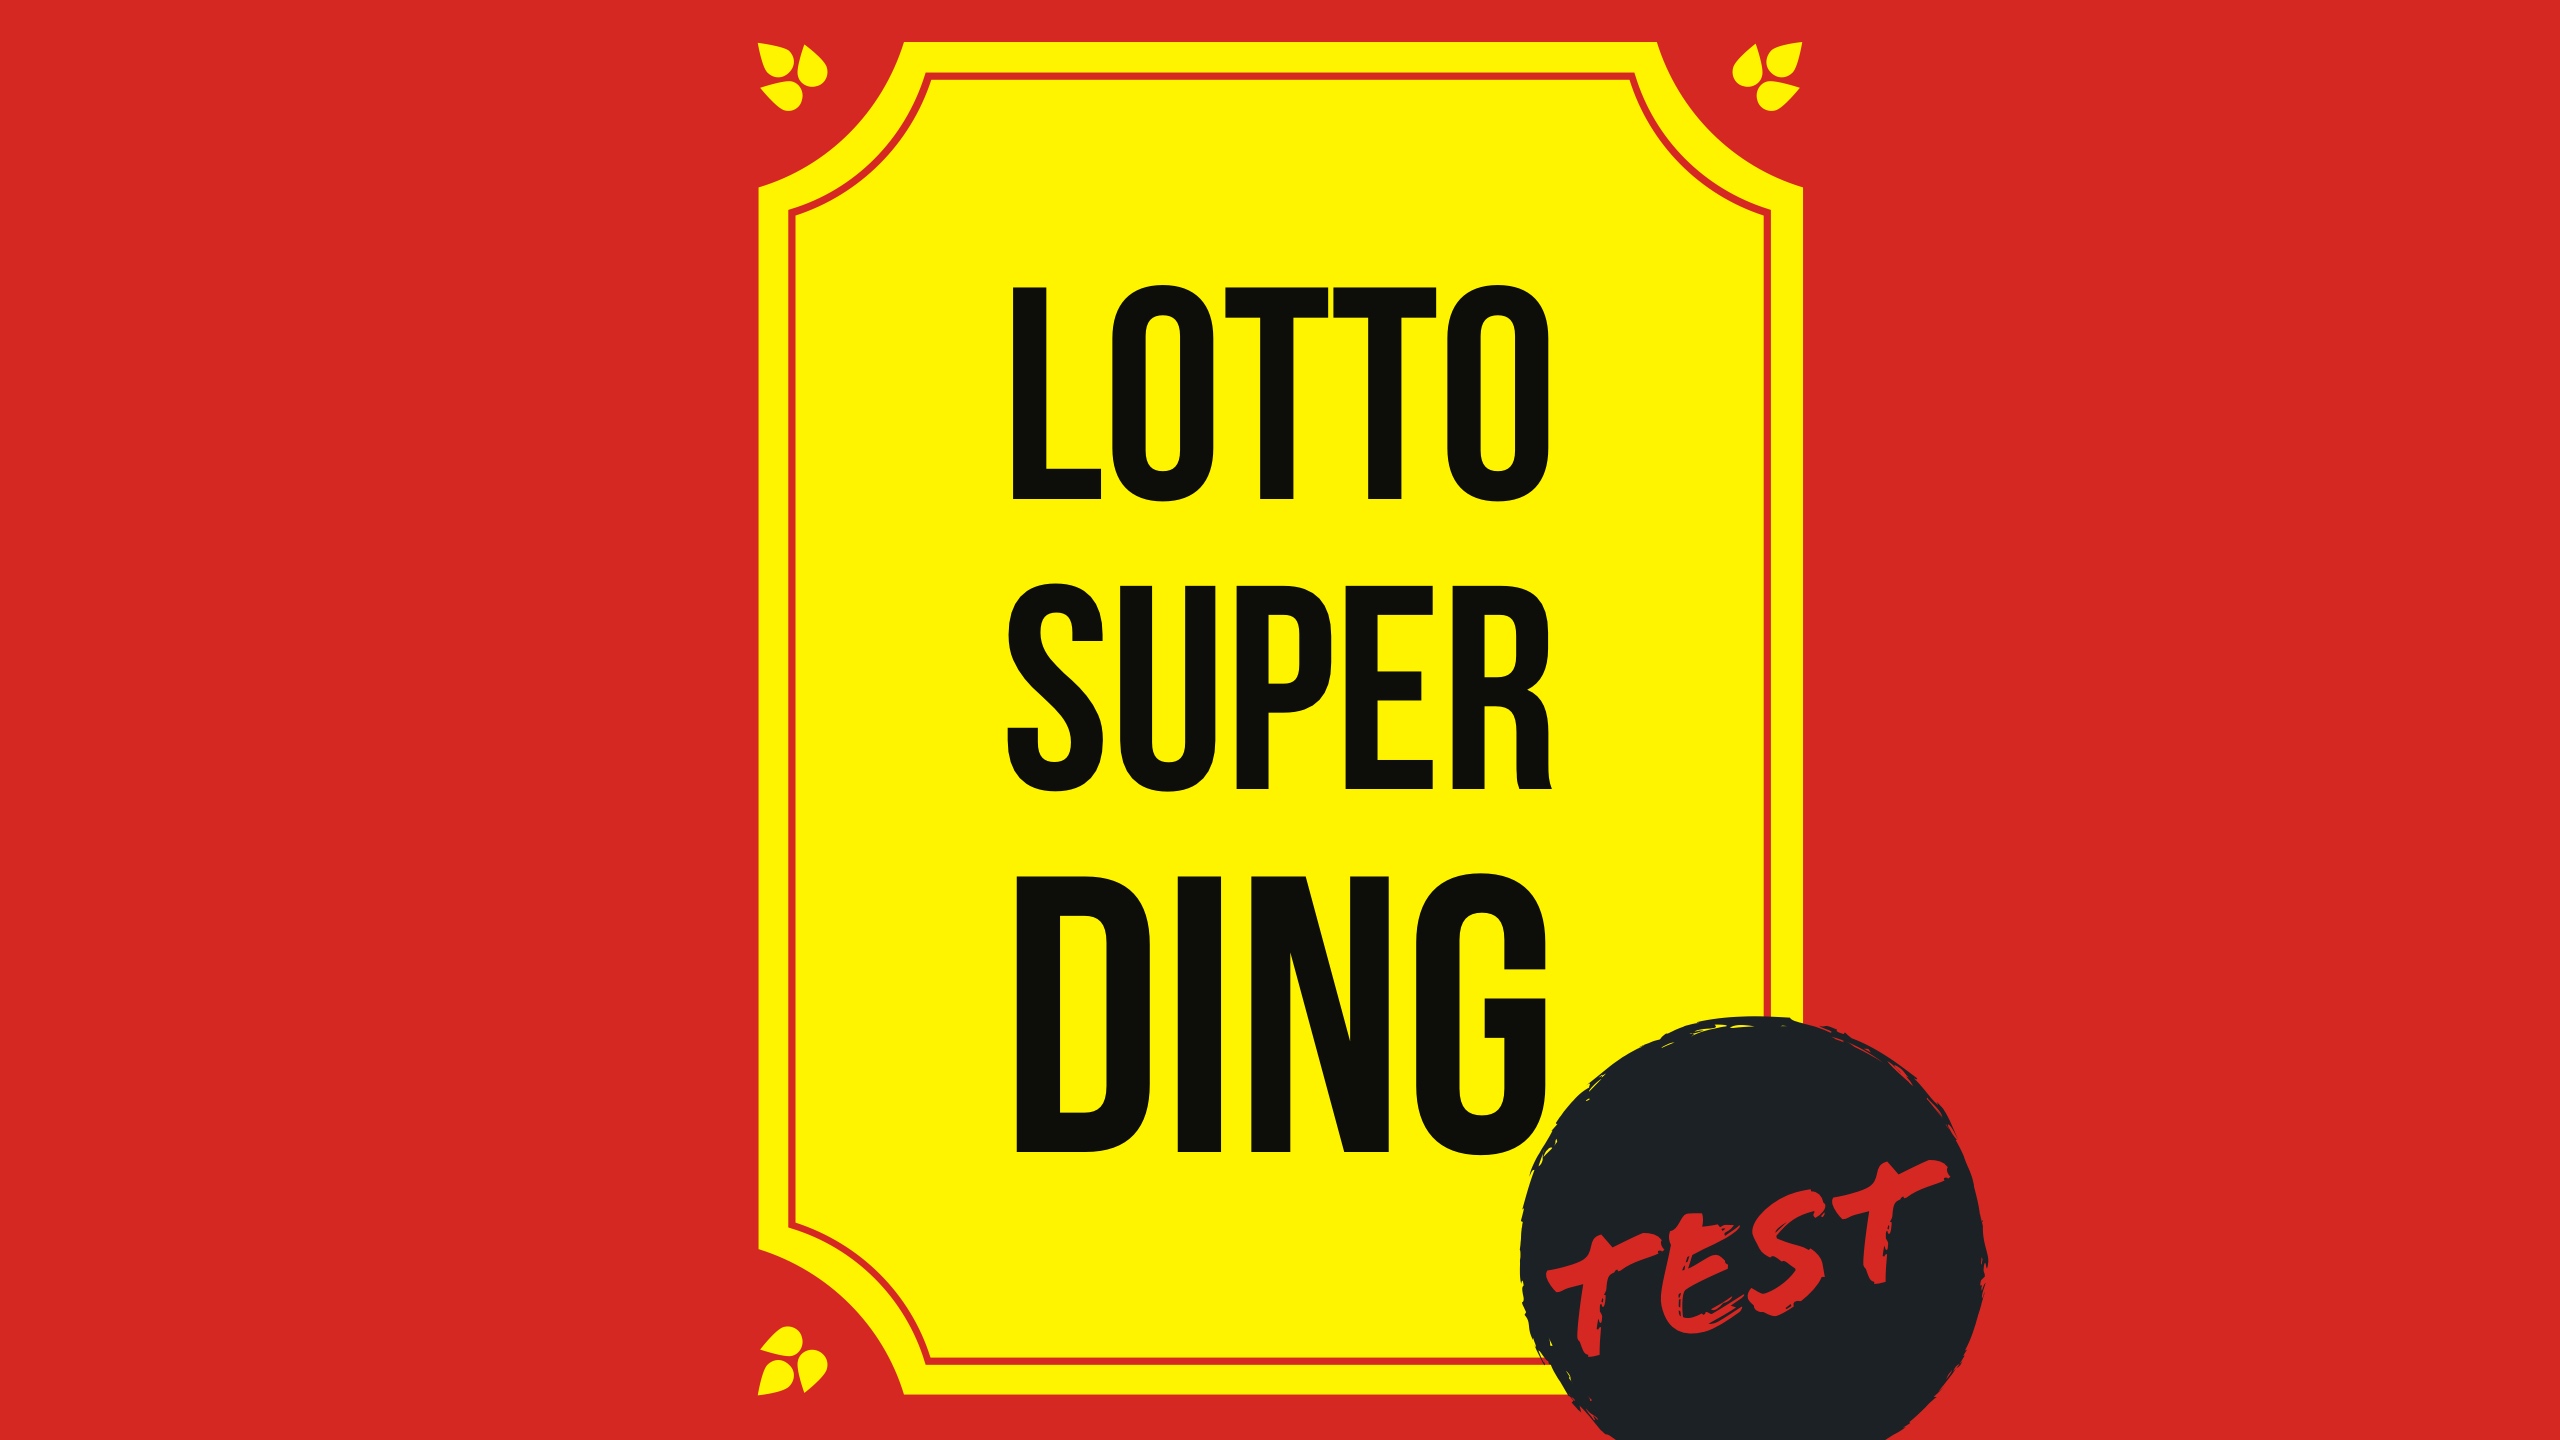 Lotto Annahmestellen Hessen